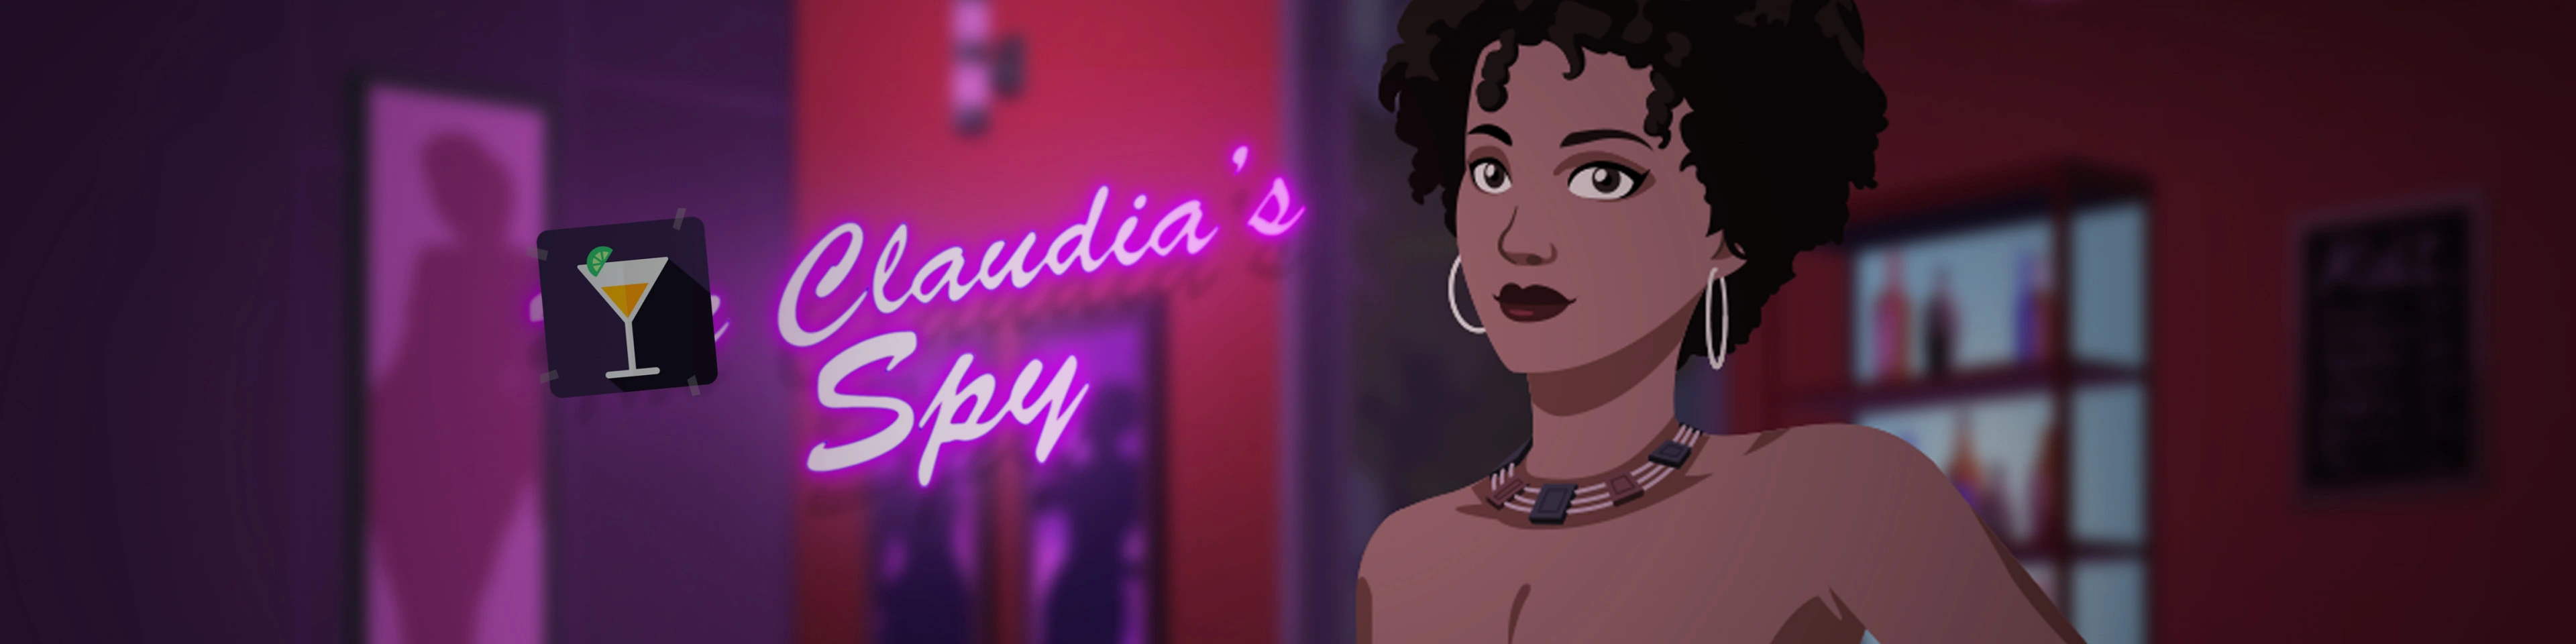 Claudia's Spy [v1.0] main image